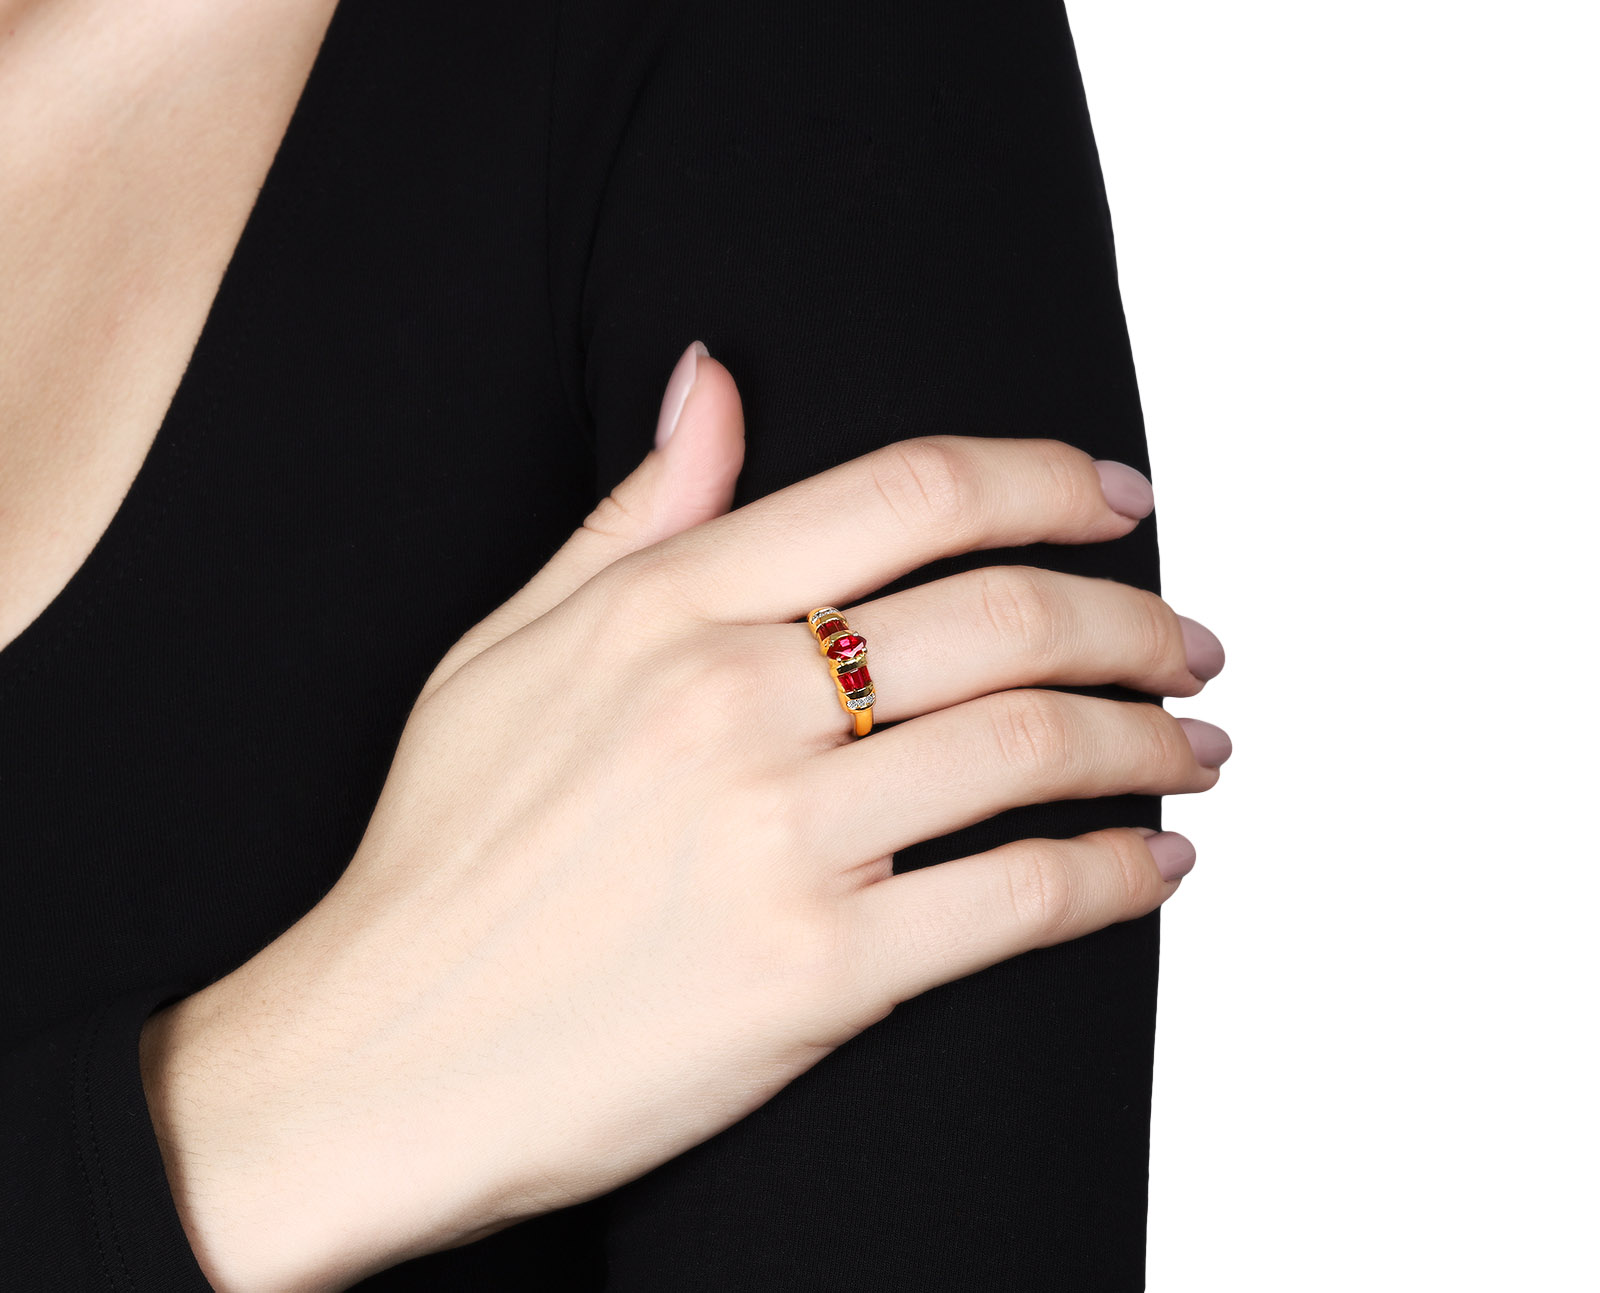 Модное золотое кольцо с рубинами 0.58ct